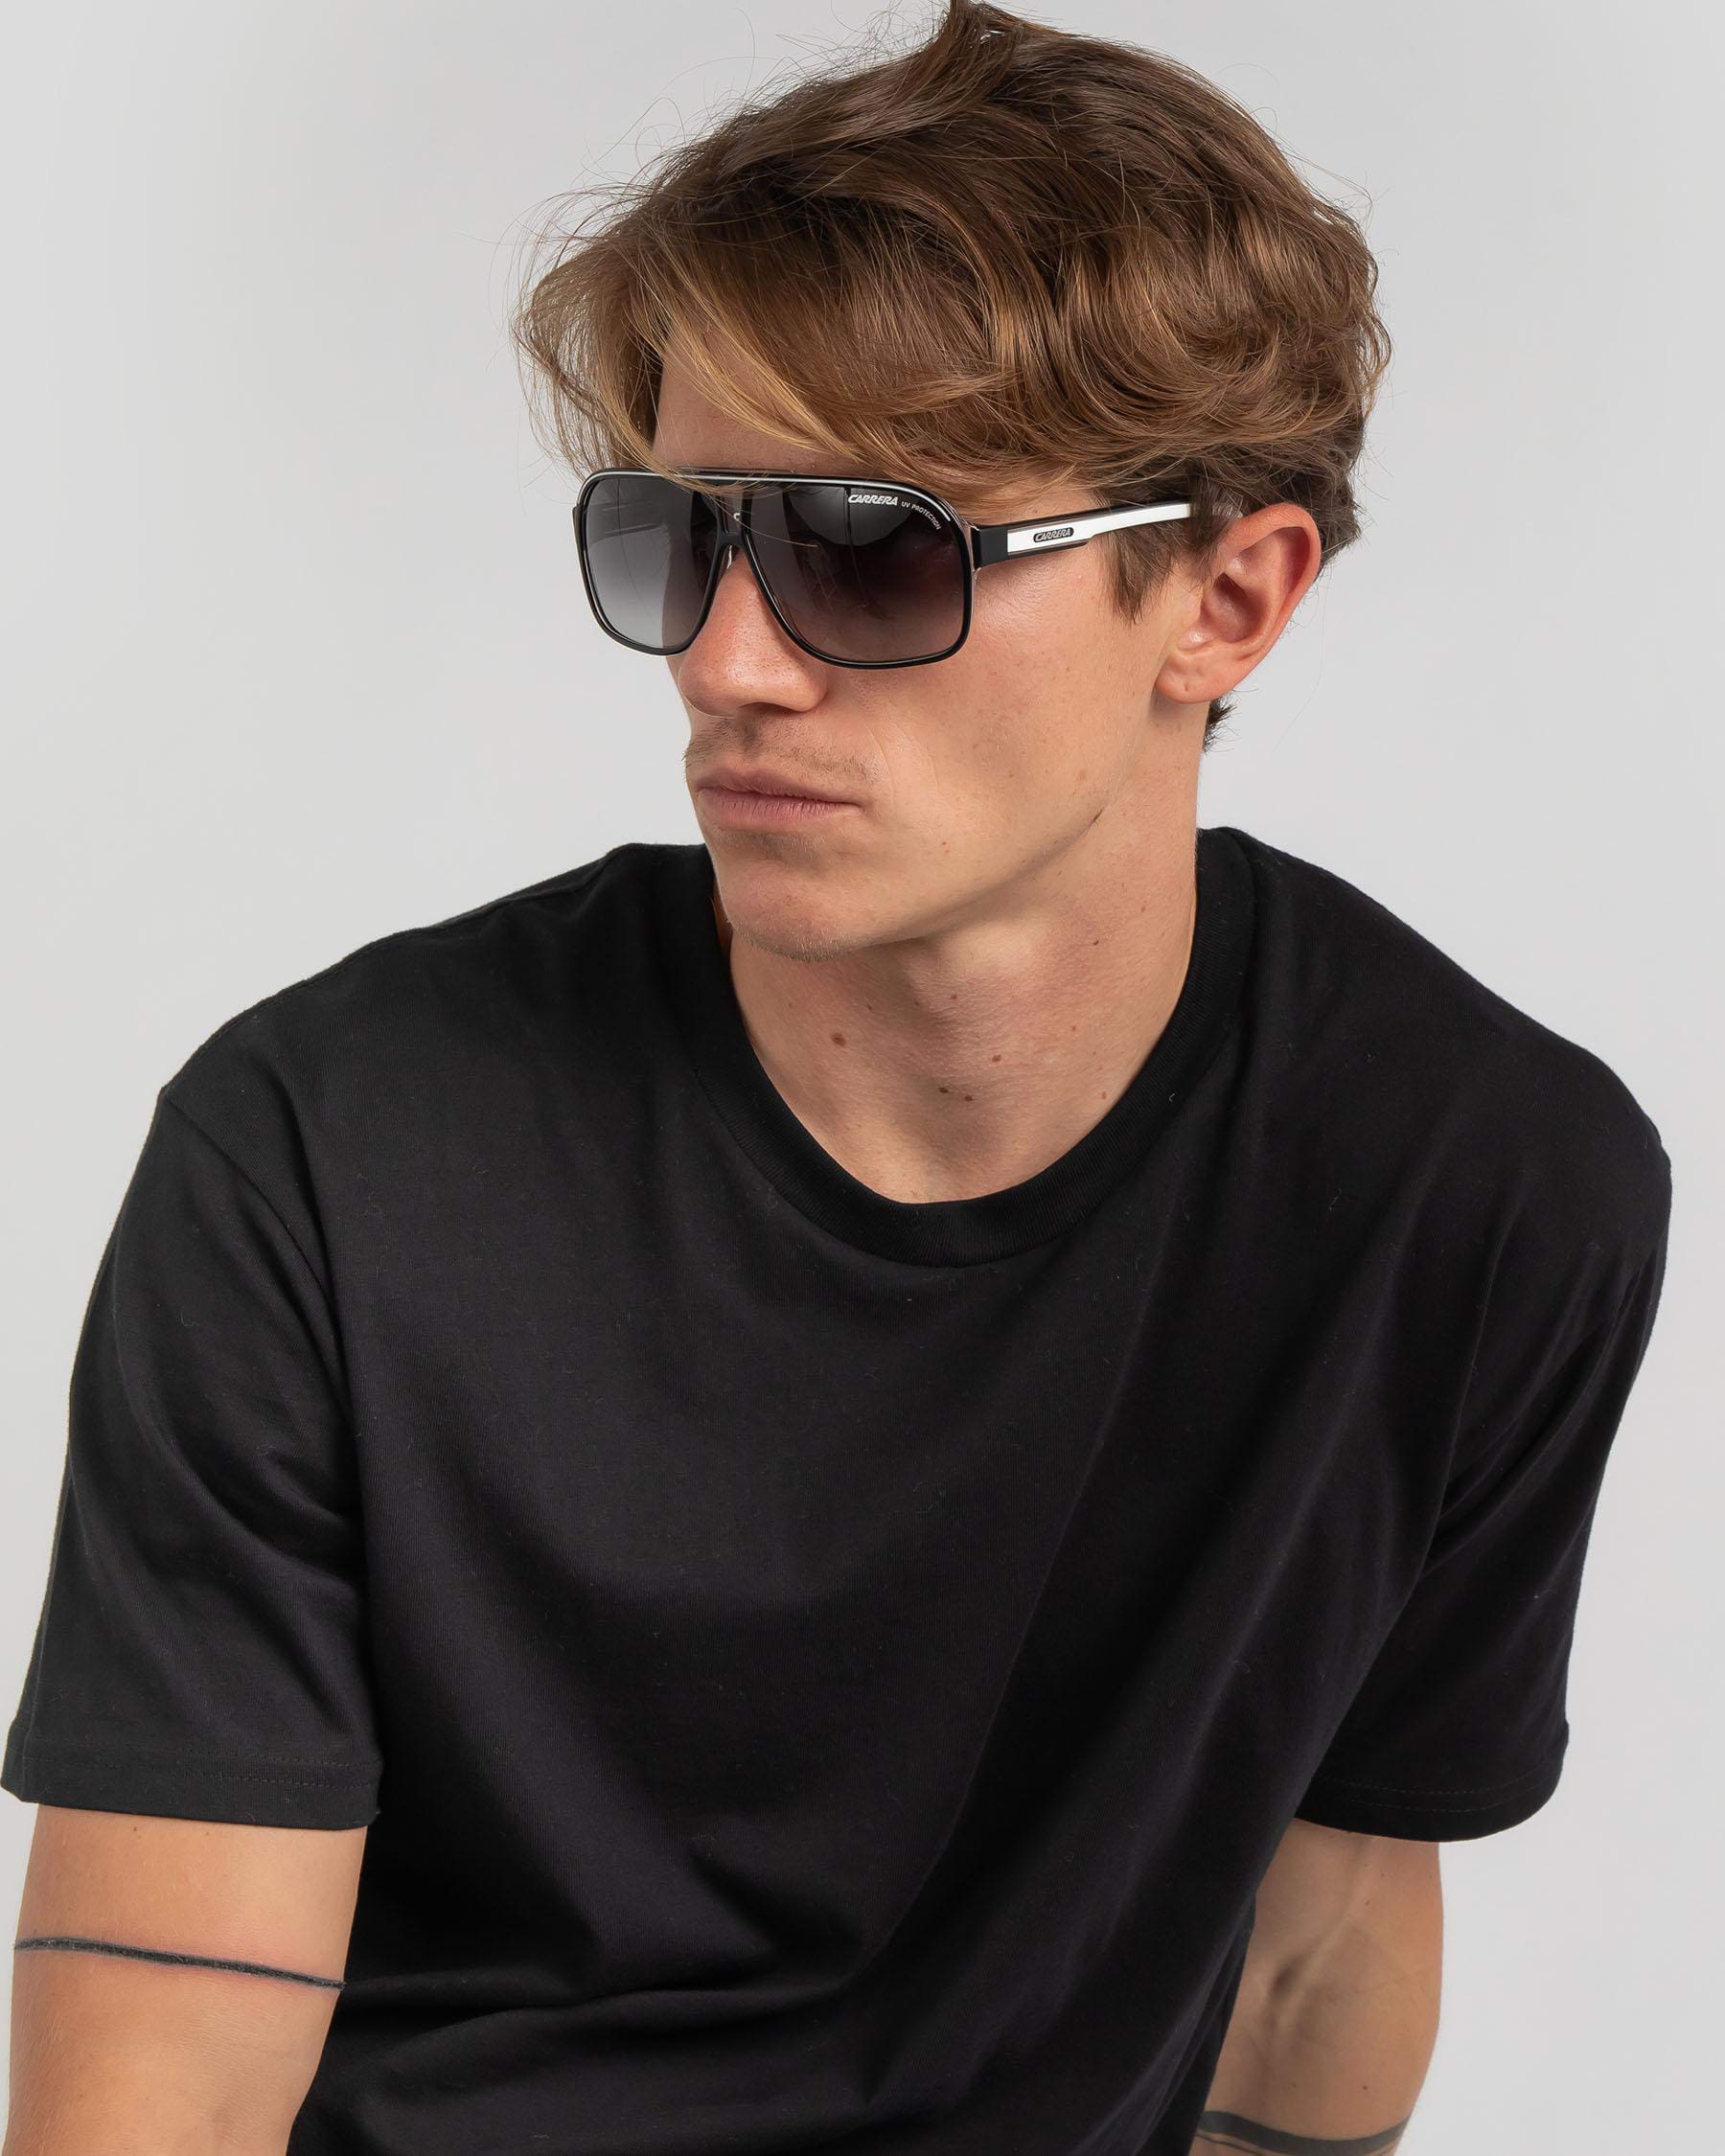 Carrera Grand Prix 2 Sunglasses In Black/white | City Beach Australia